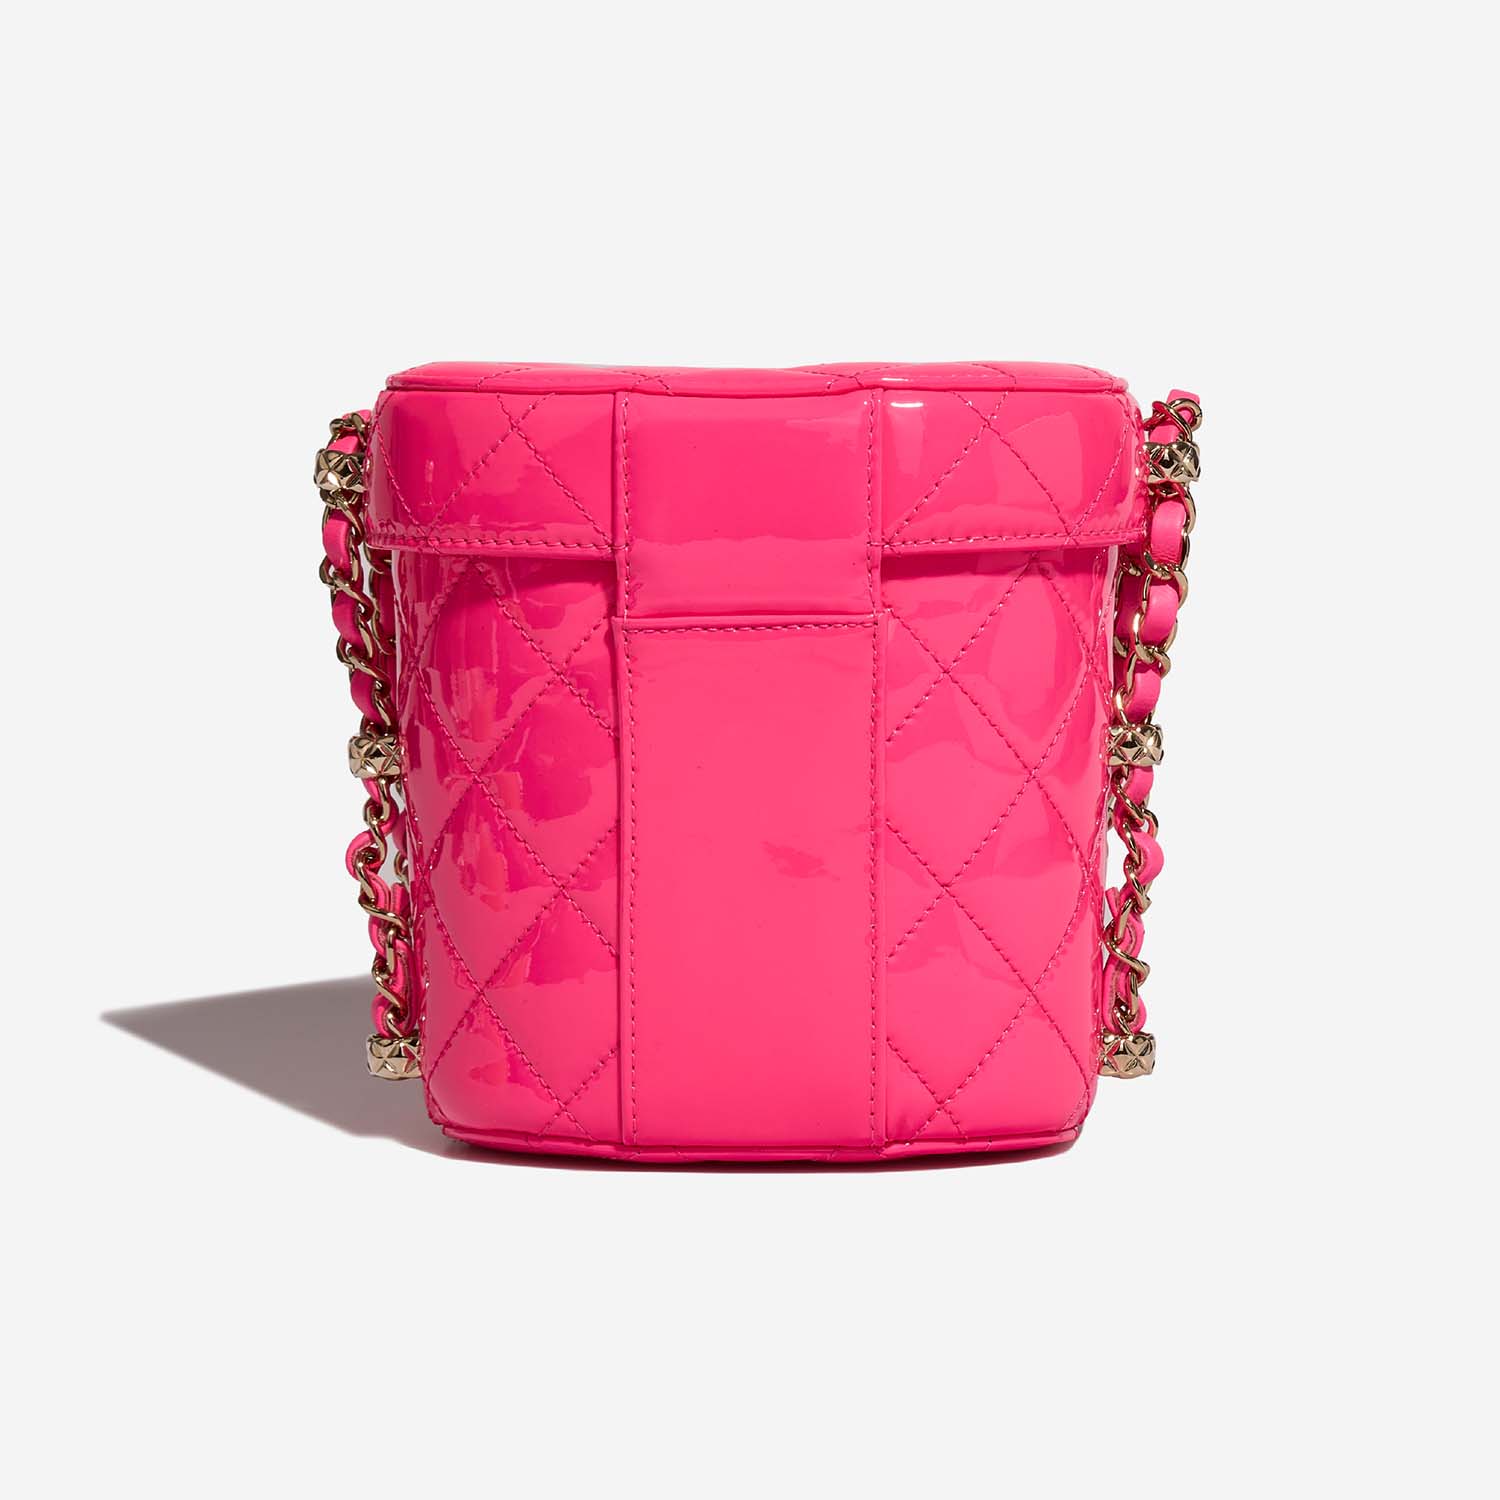 Chanel Vanity Small NeonPink 5B S | Verkaufen Sie Ihre Designer-Tasche auf Saclab.com